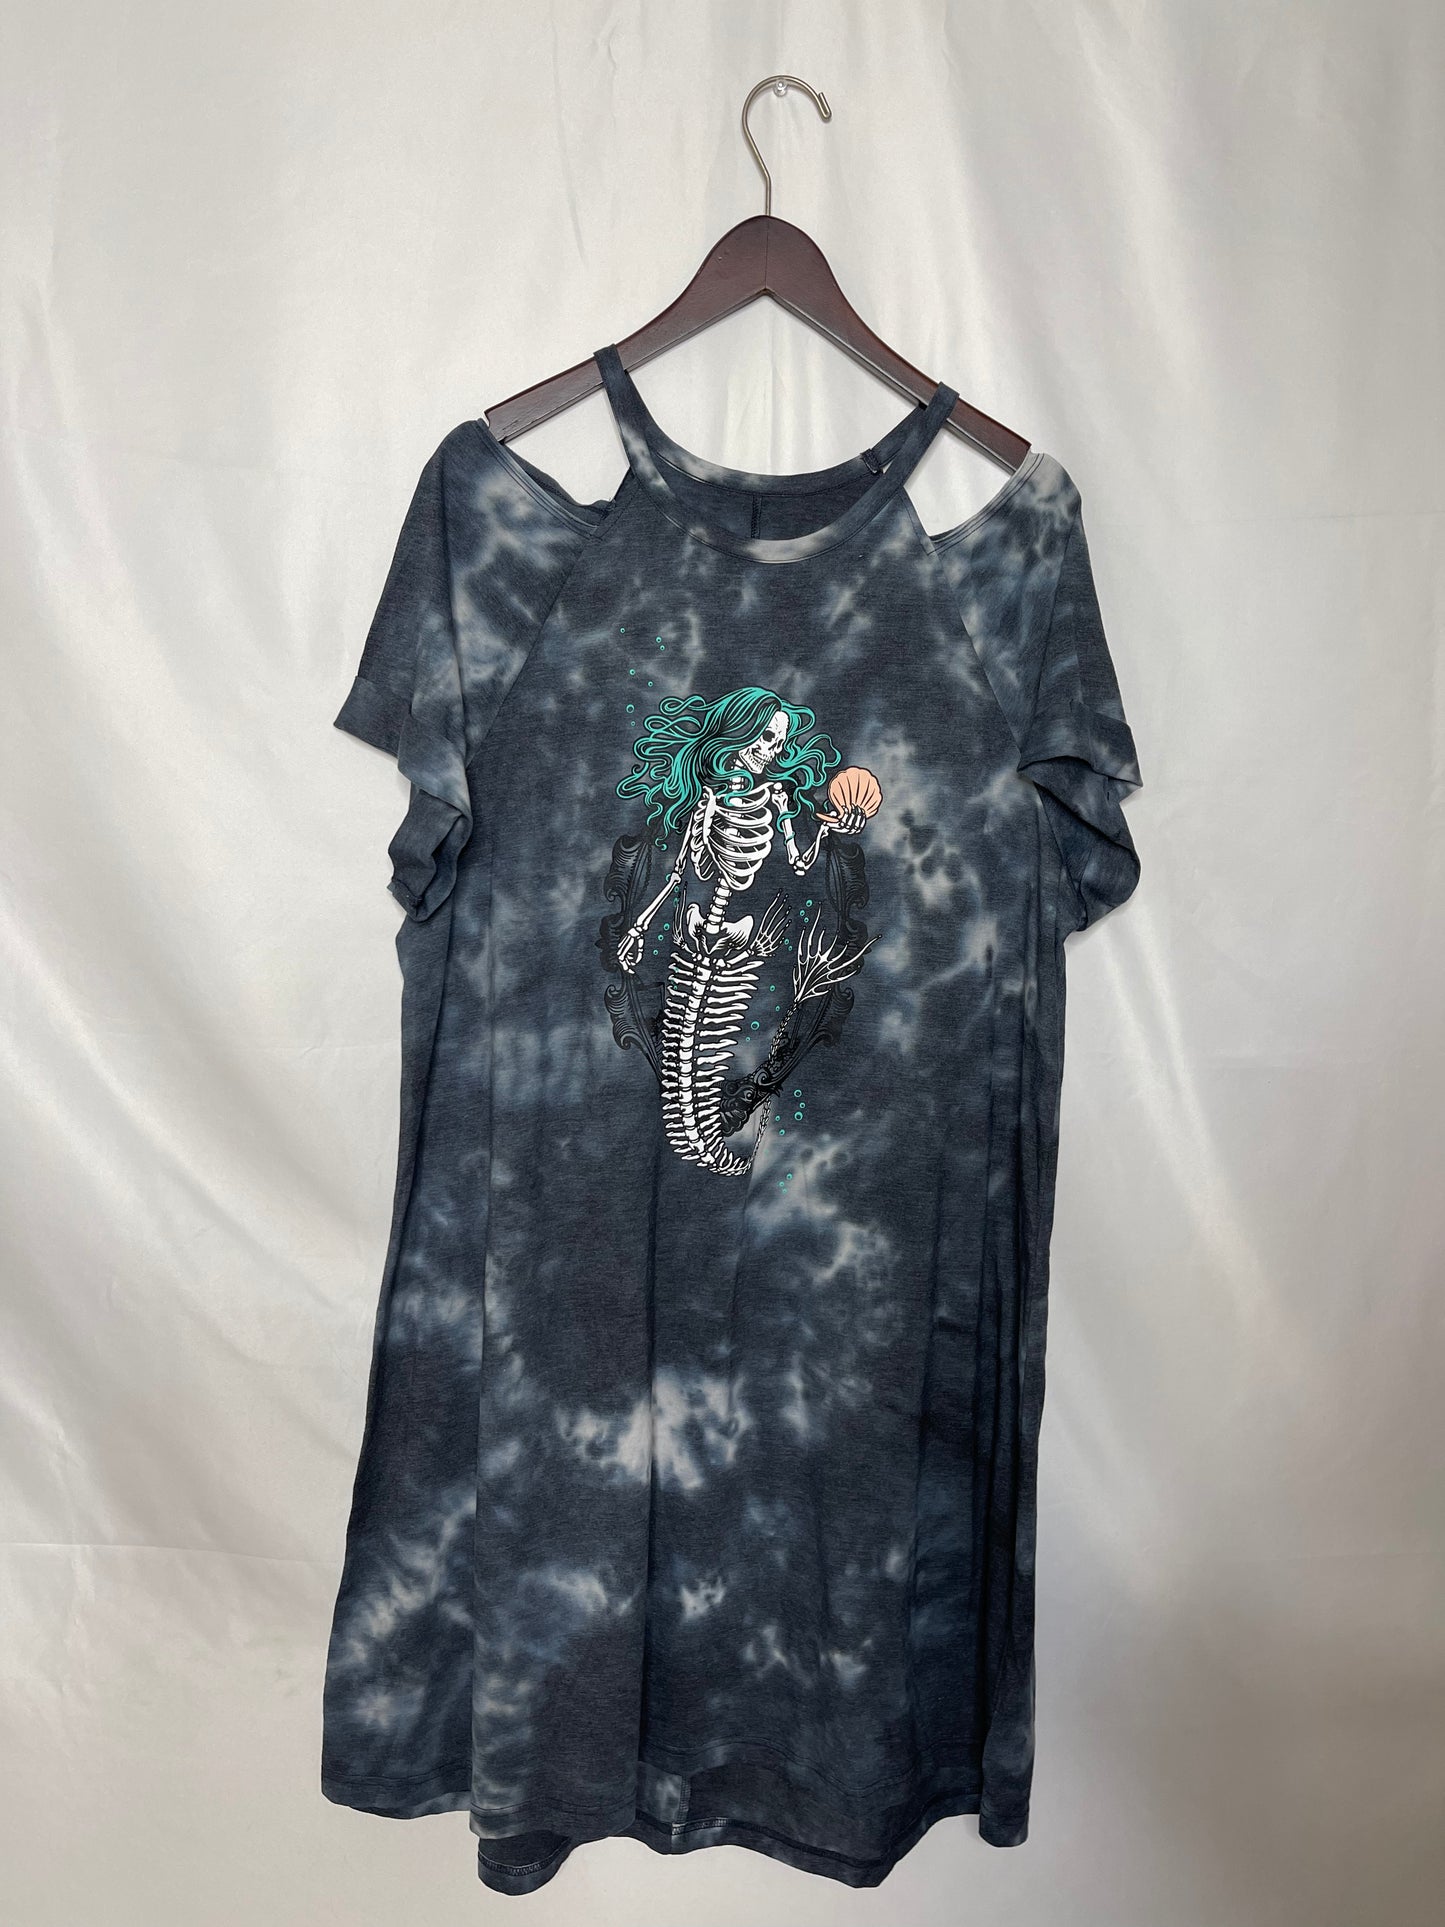 2x TORRID tie-dye graphic tee dress with skull mermaid